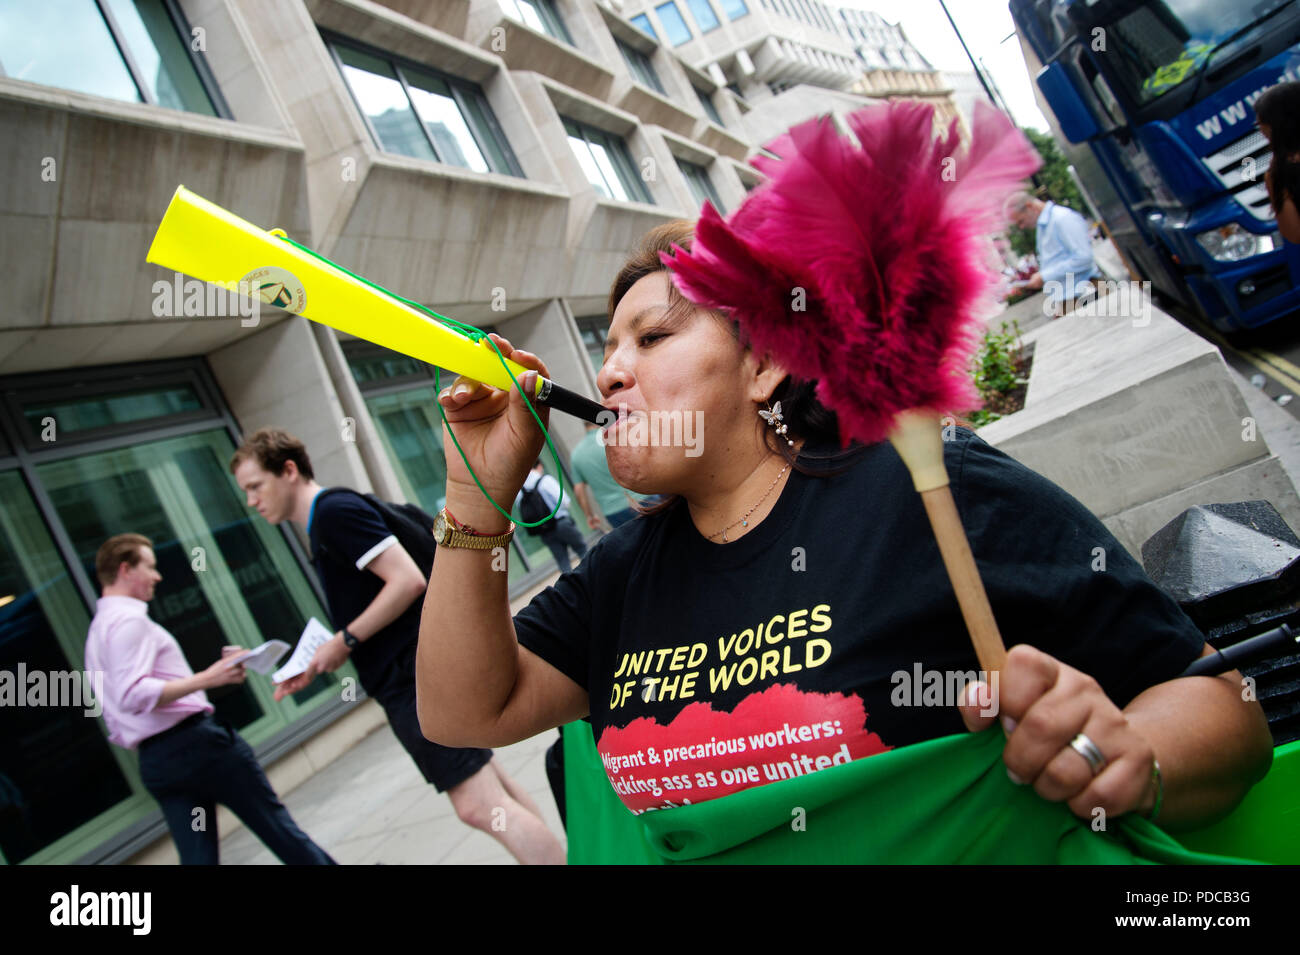 Londres, Reino Unido. 08 de agosto de 2018. Ministerio de Justicia, la pequeña Francia, Londres. Los limpiadores de la voces unidas de la Unión Mundial durante tres días de huelga exigiendo que se les pague el salario de Londres £10.20 una hora en lugar del salario mínimo de £7.83 que actualmente obtiene. Un limpiador tiene un plumero y sopla una vuvuzela Crédito: Jenny Matthews/Alamy Live News Foto de stock